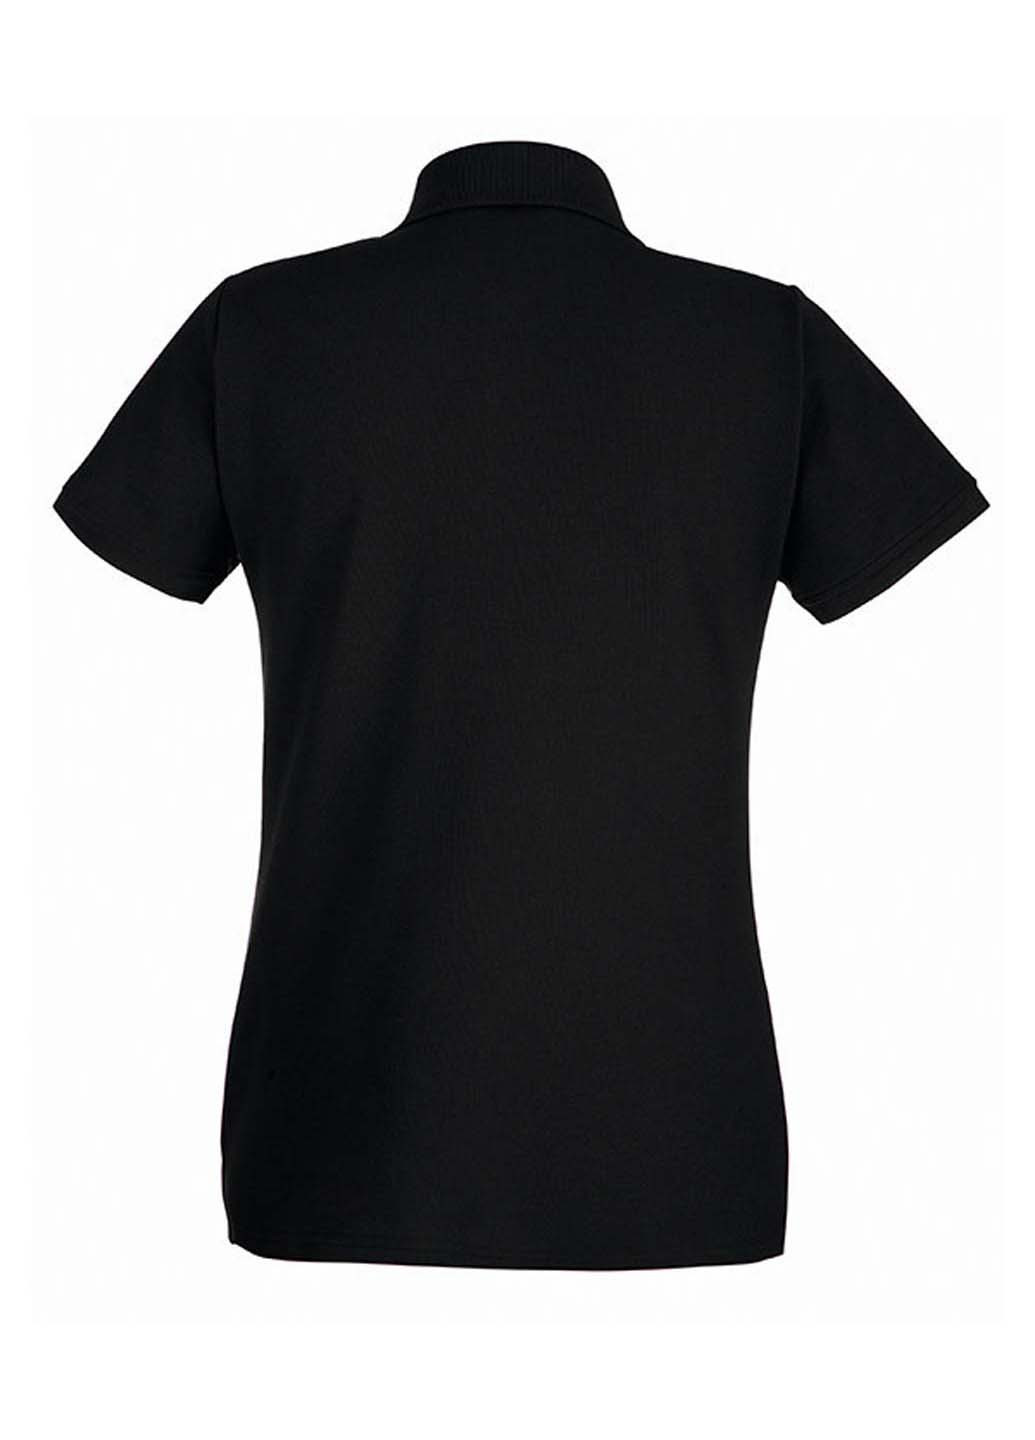 Черная женская футболка-поло Fruit of the Loom